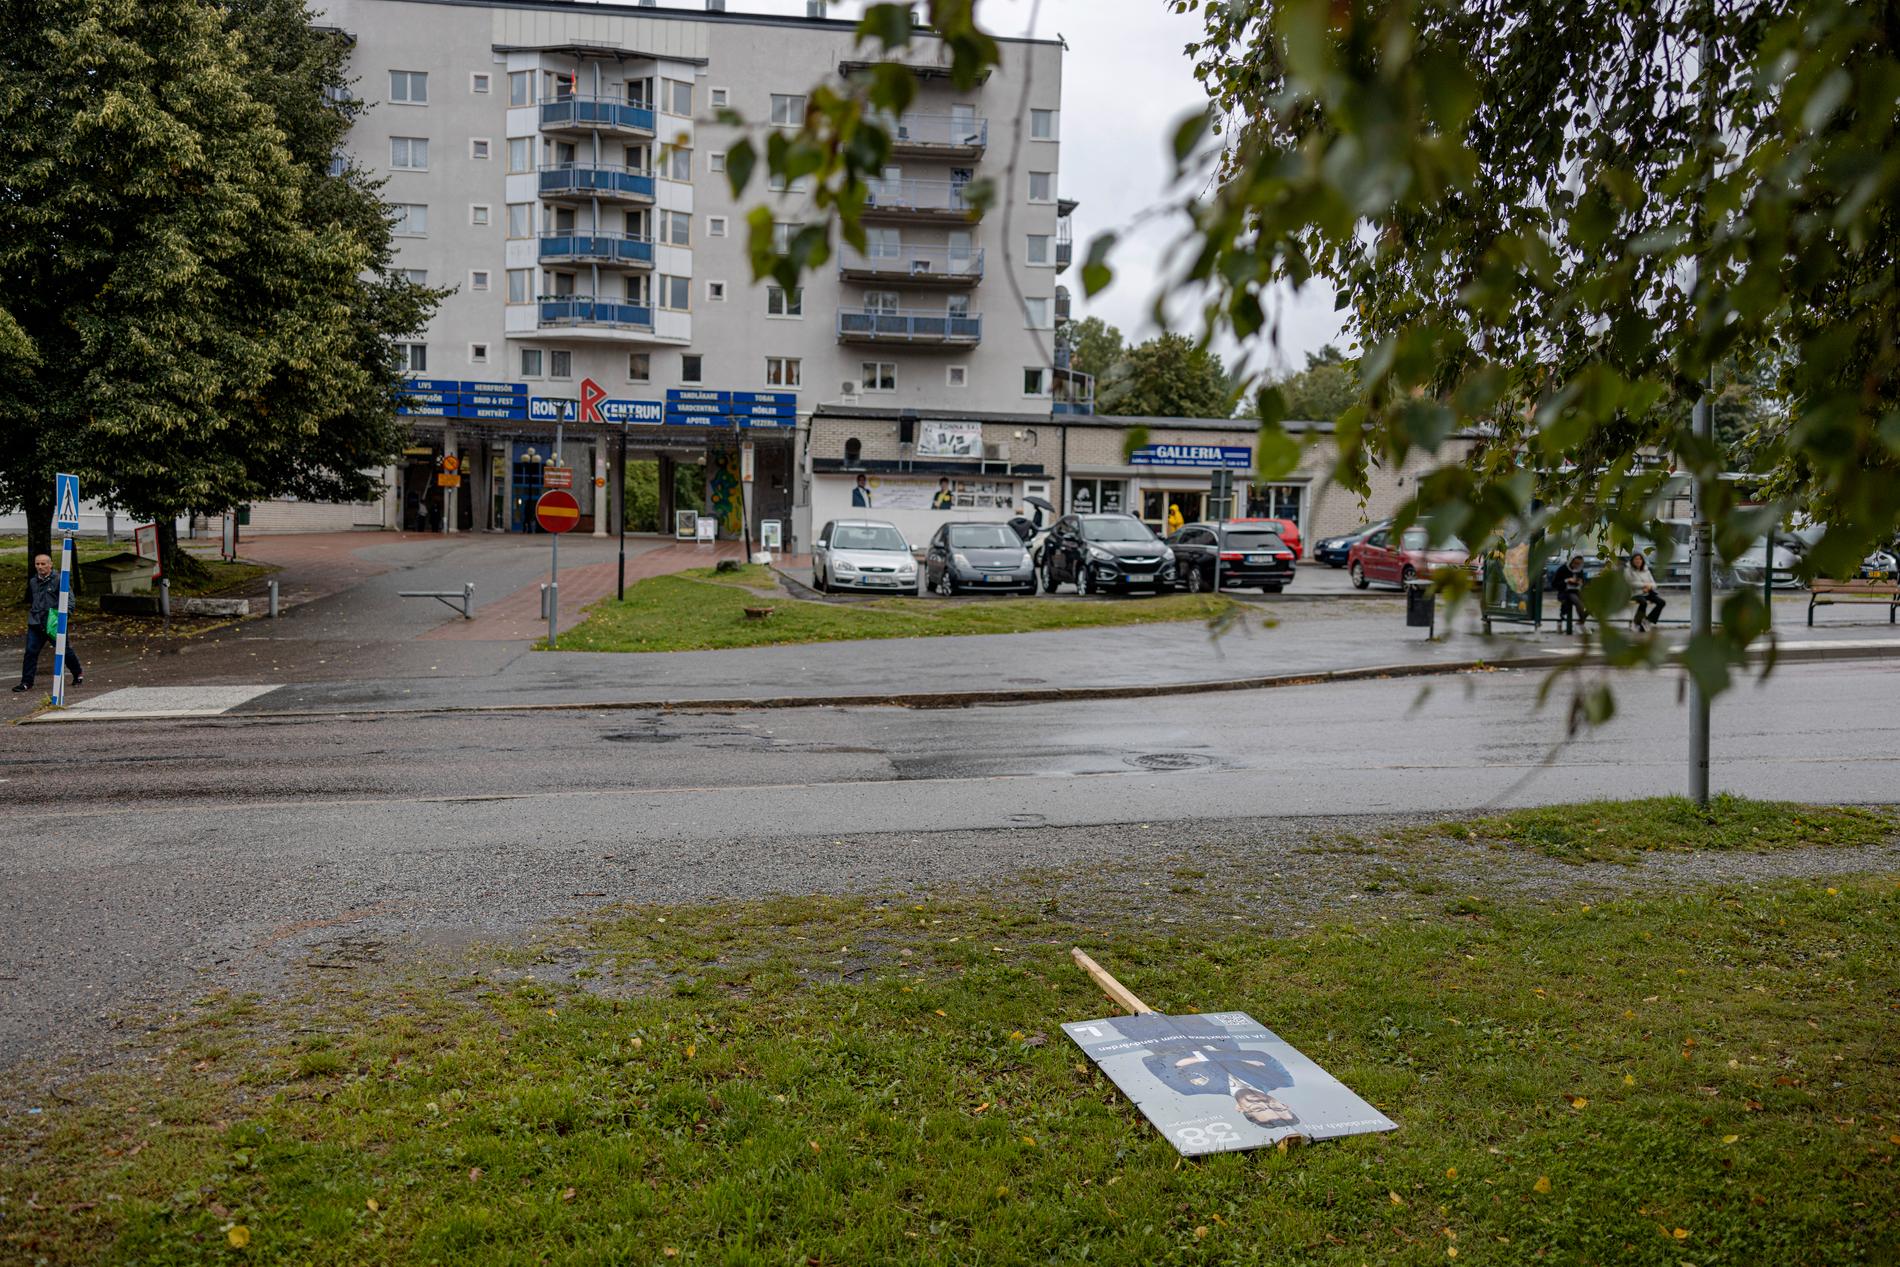 I stadsdelen Ronna i Södertälje var valdeltagandet bland de lägsta i hela landet 2018 och i år ser det ut att bli ännu lägre.